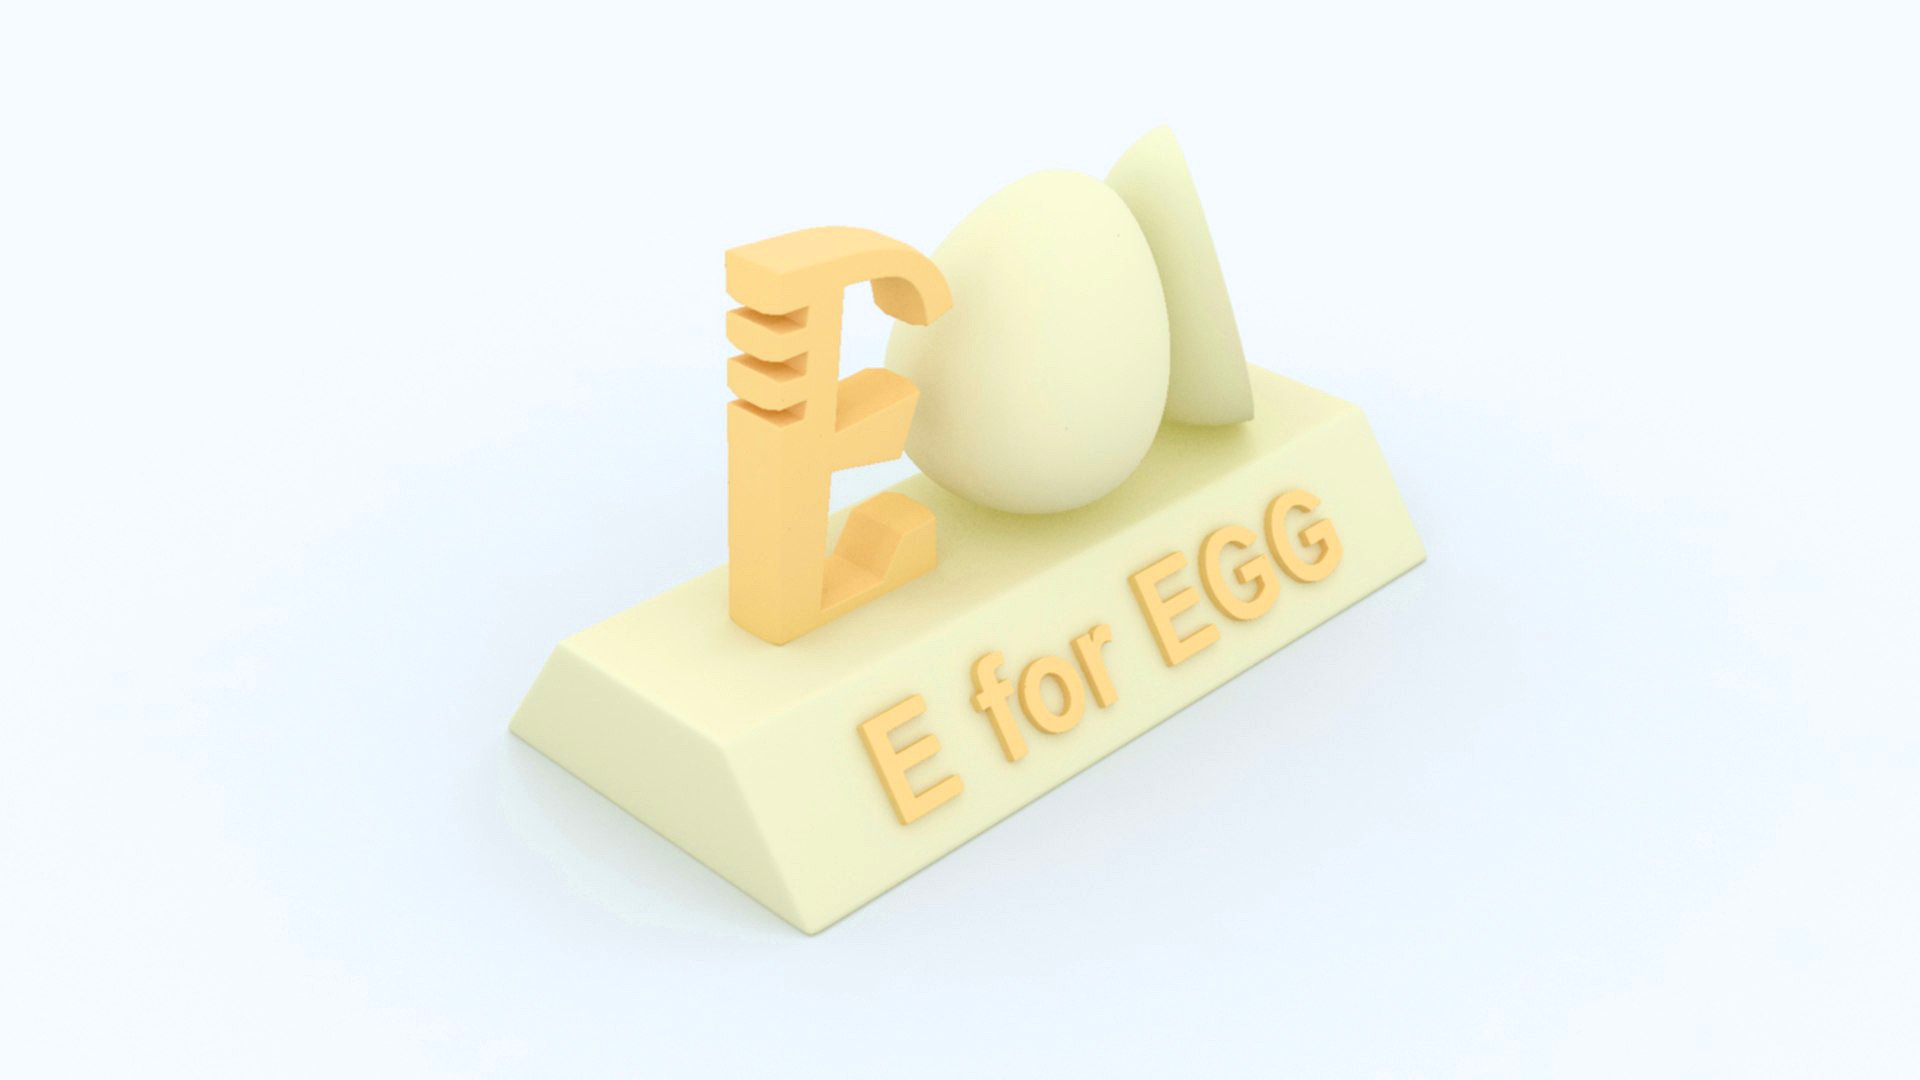 E for EGG